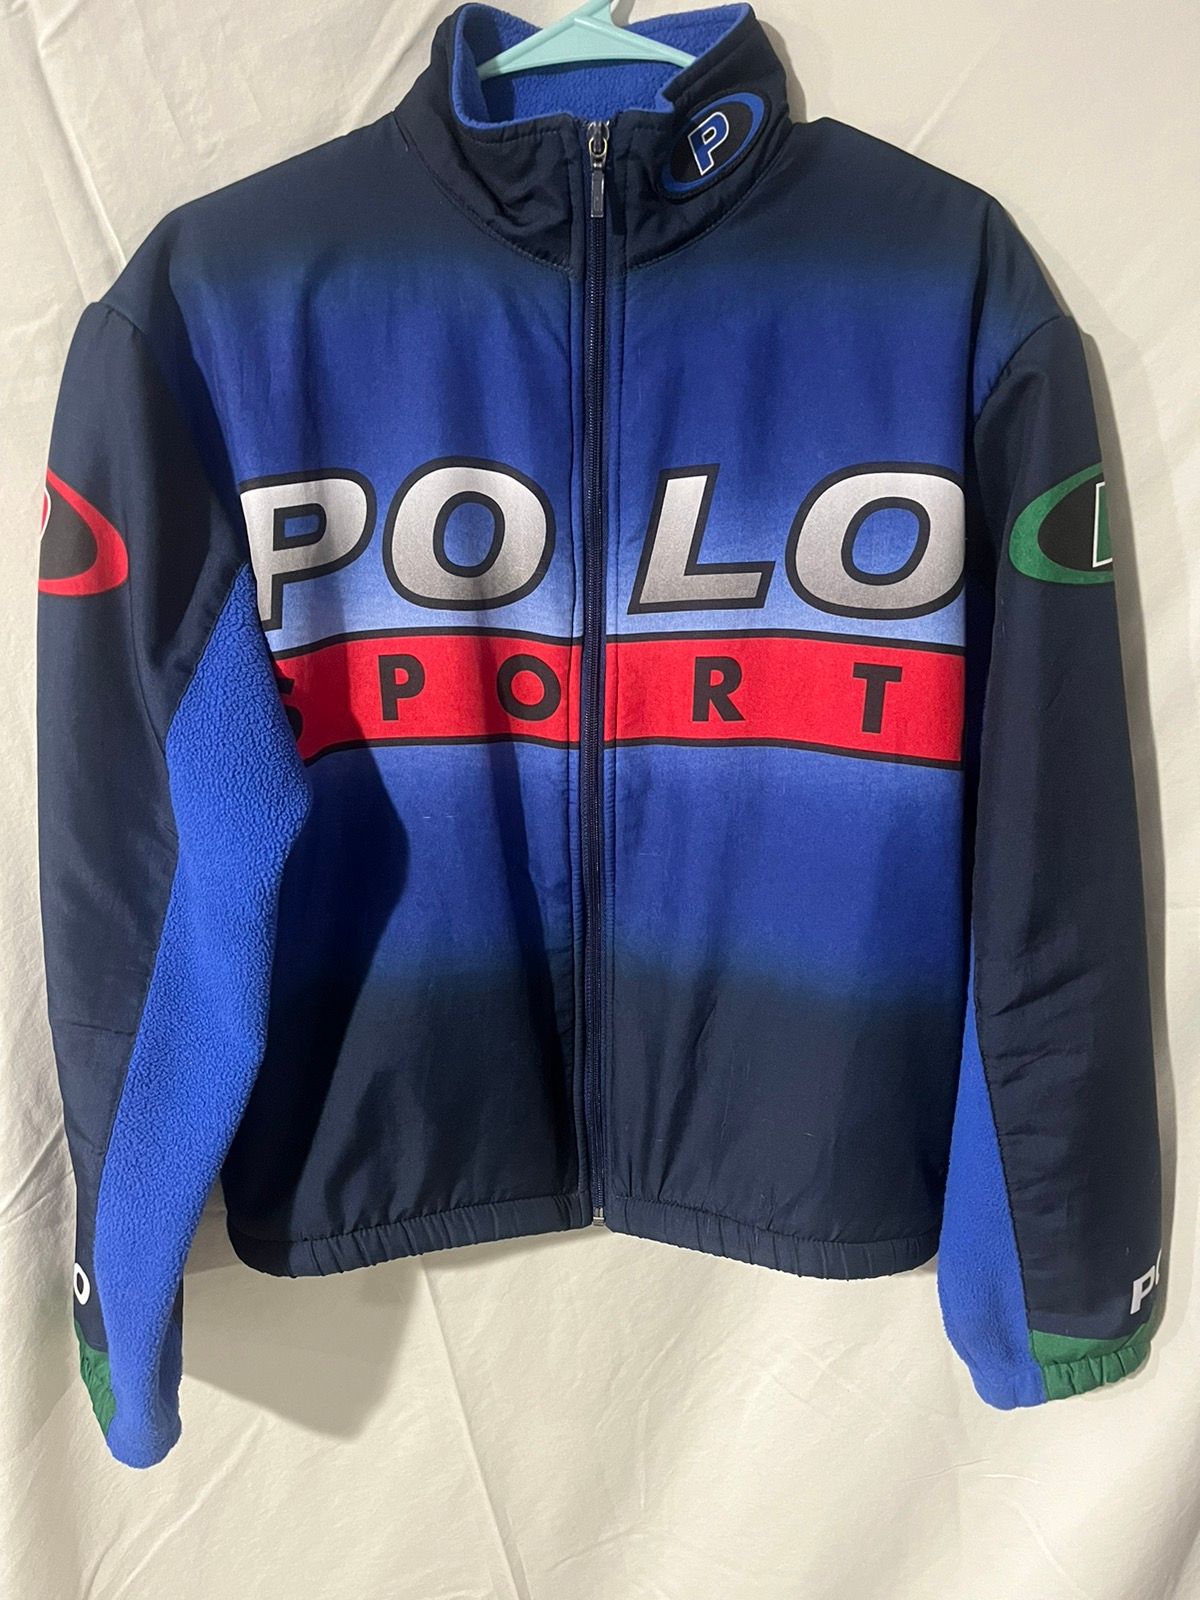 Polo Ralph Lauren Rare Pepsi polo sport fleece | Grailed